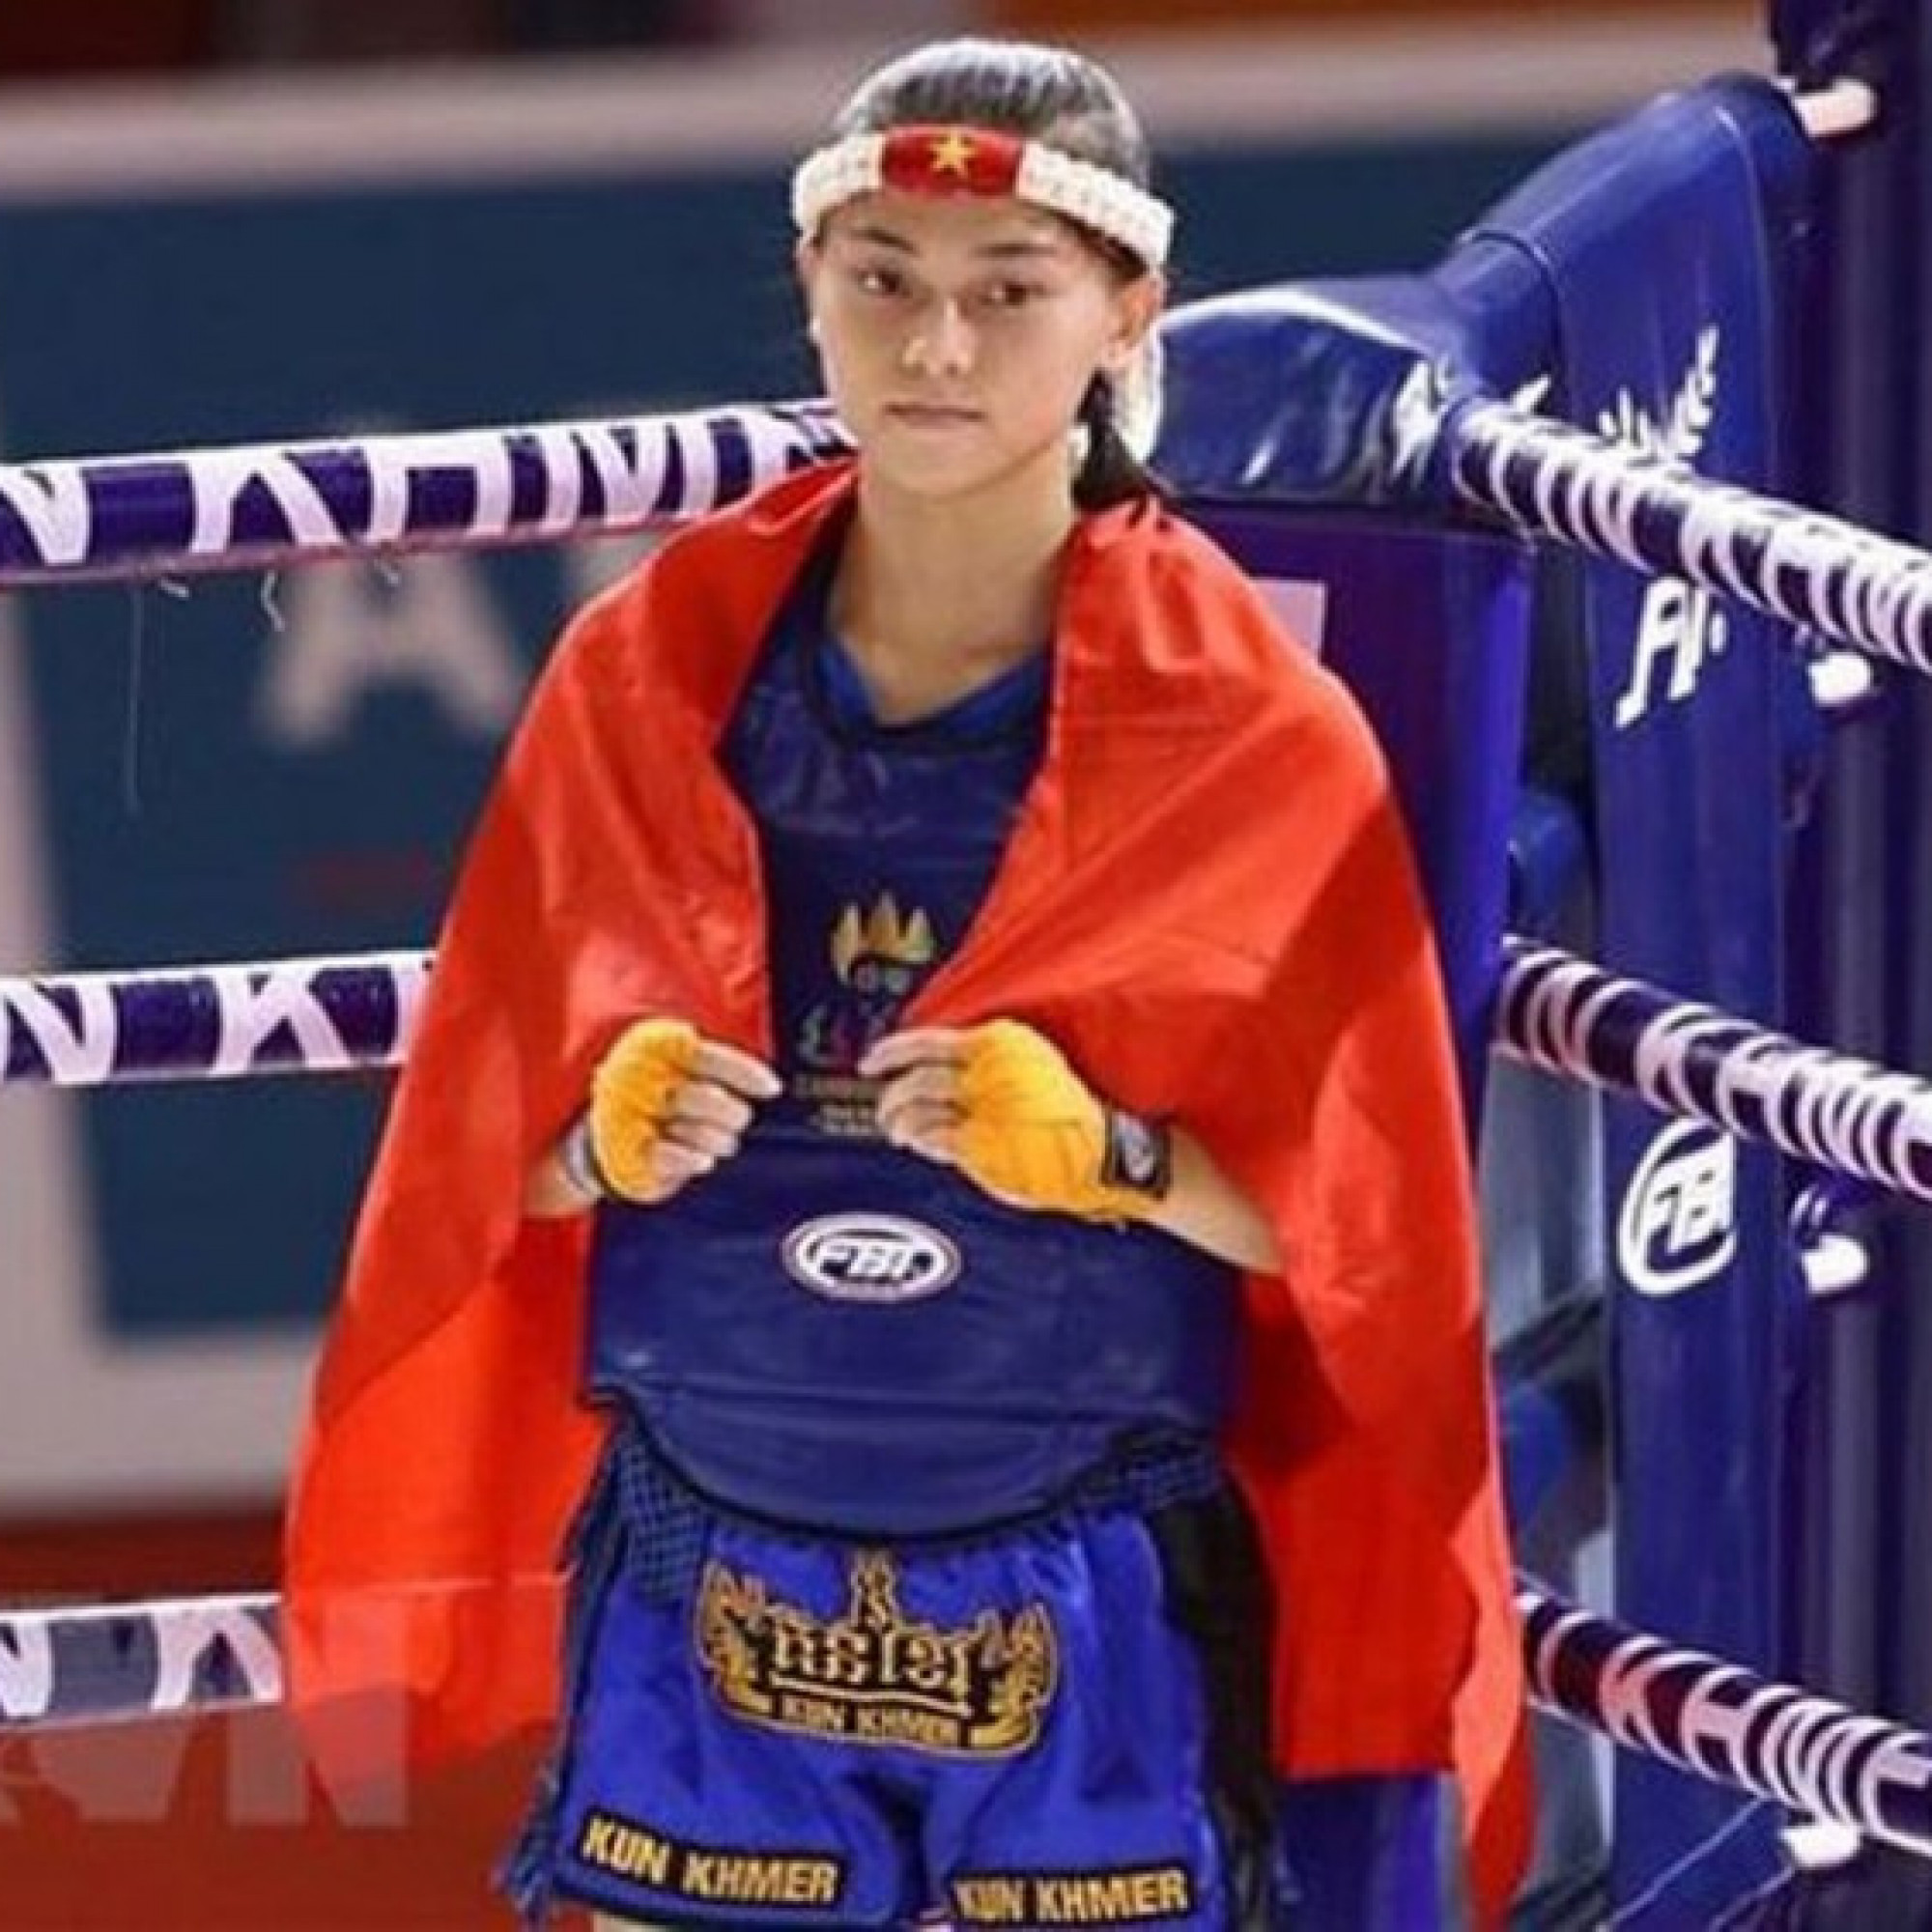 Thể thao - Nóng nhất thể thao tối 10/8: Nữ võ sỹ Muay Việt Nam xếp hạng 1 trên BXH thế giới